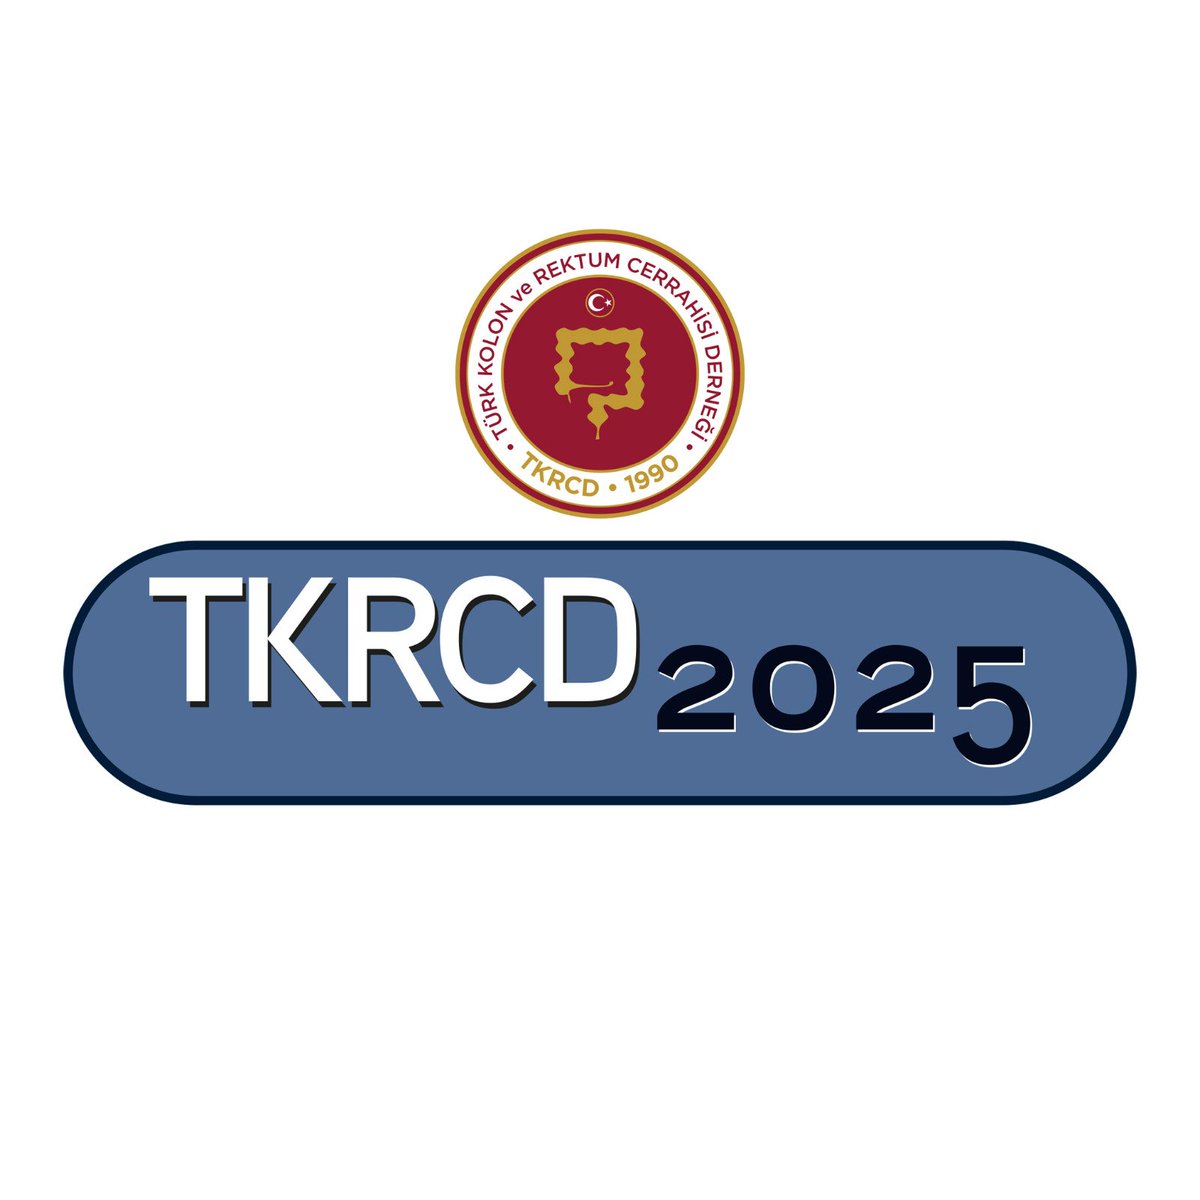 TKRCD 2025 Geliyor! 
Detaylar çok yakında sayfamızda tkrcd2025.org #tkrcd2025 #tkrcd